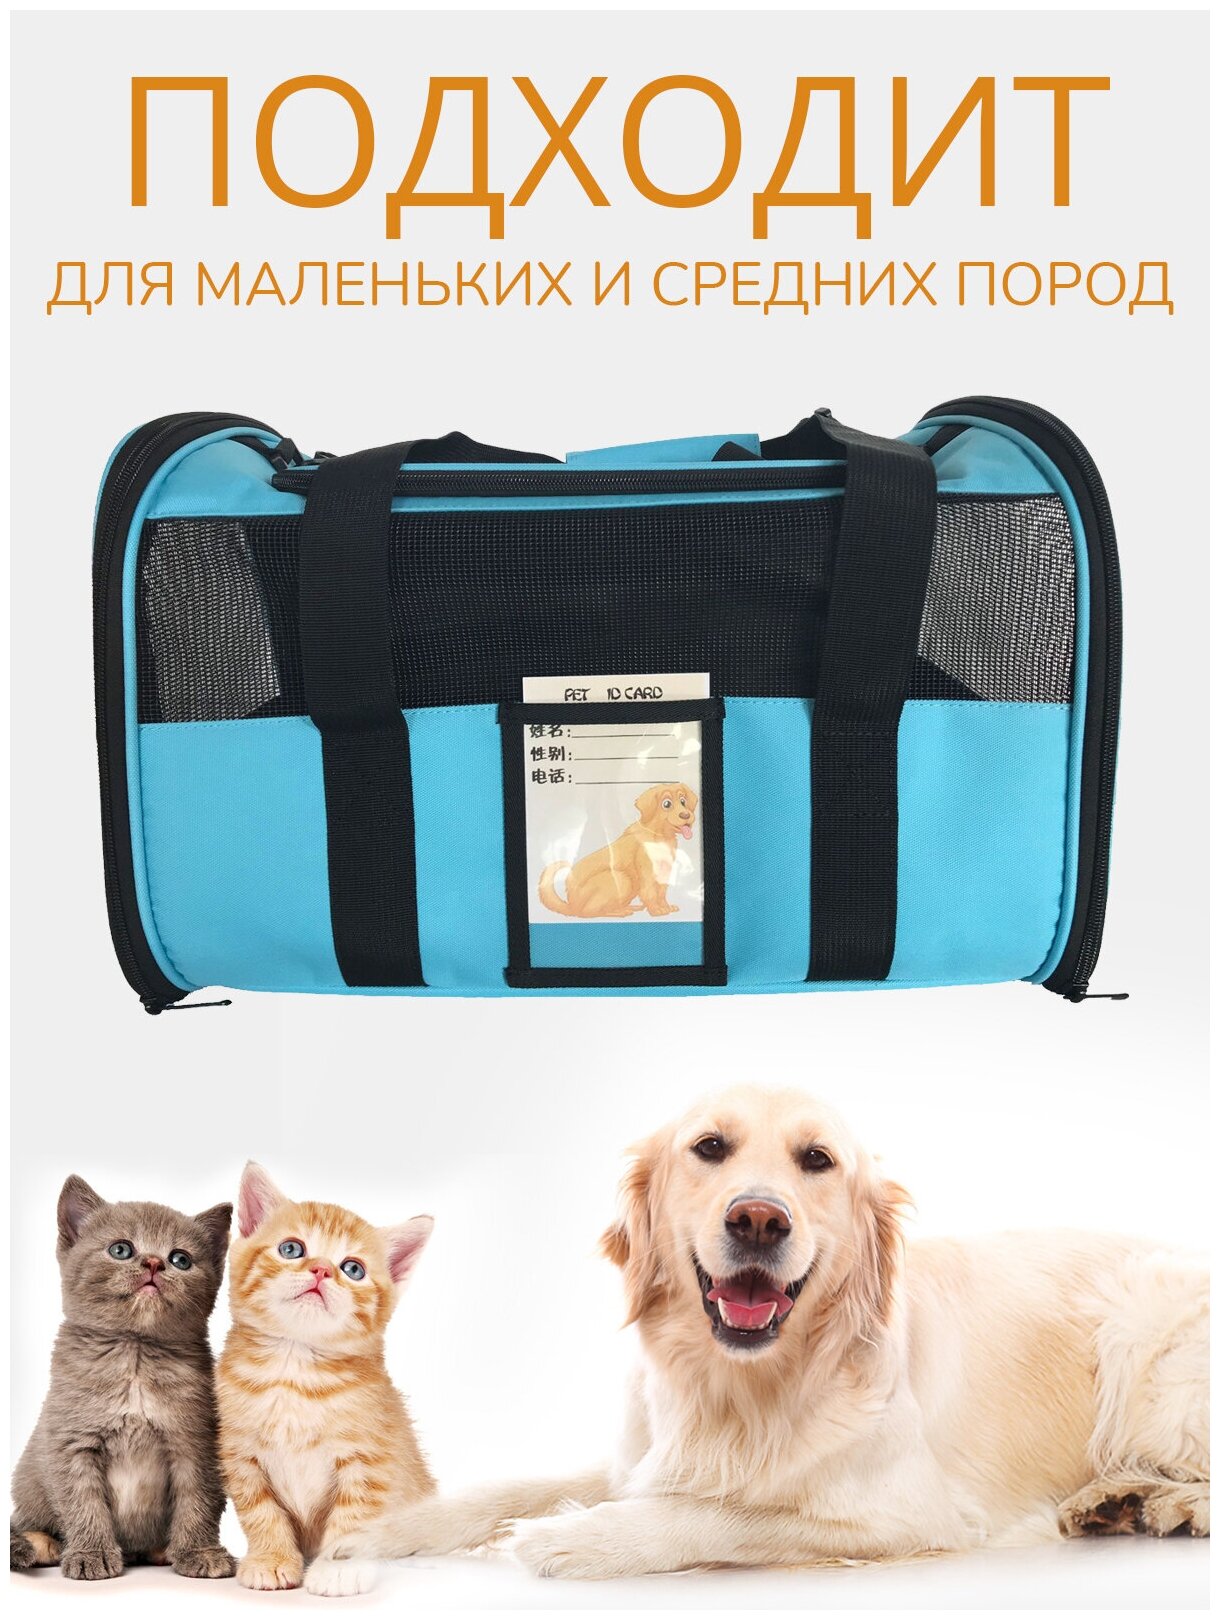 Переноска для животных ZES, сетчатая сумка для переноски кошек и собак мелких пород, размер 45х28х28, голубого цвета - фотография № 3